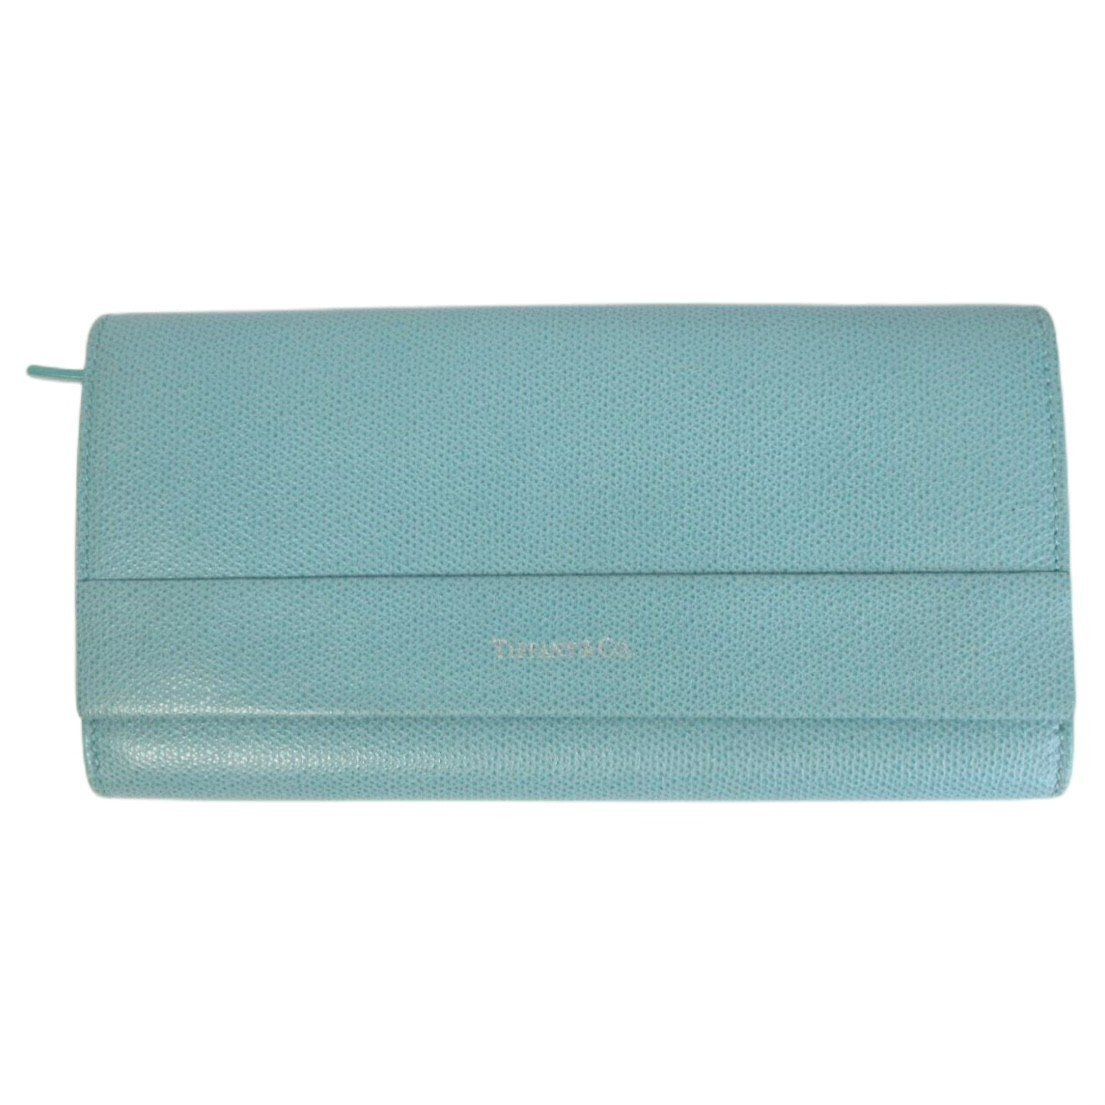  почти   товар в хорошем состоянии  Tiffany & Co. ...  Continental  створка  ...  длинный кошелек    длинный  ...  бирюзовый  голубой ◆